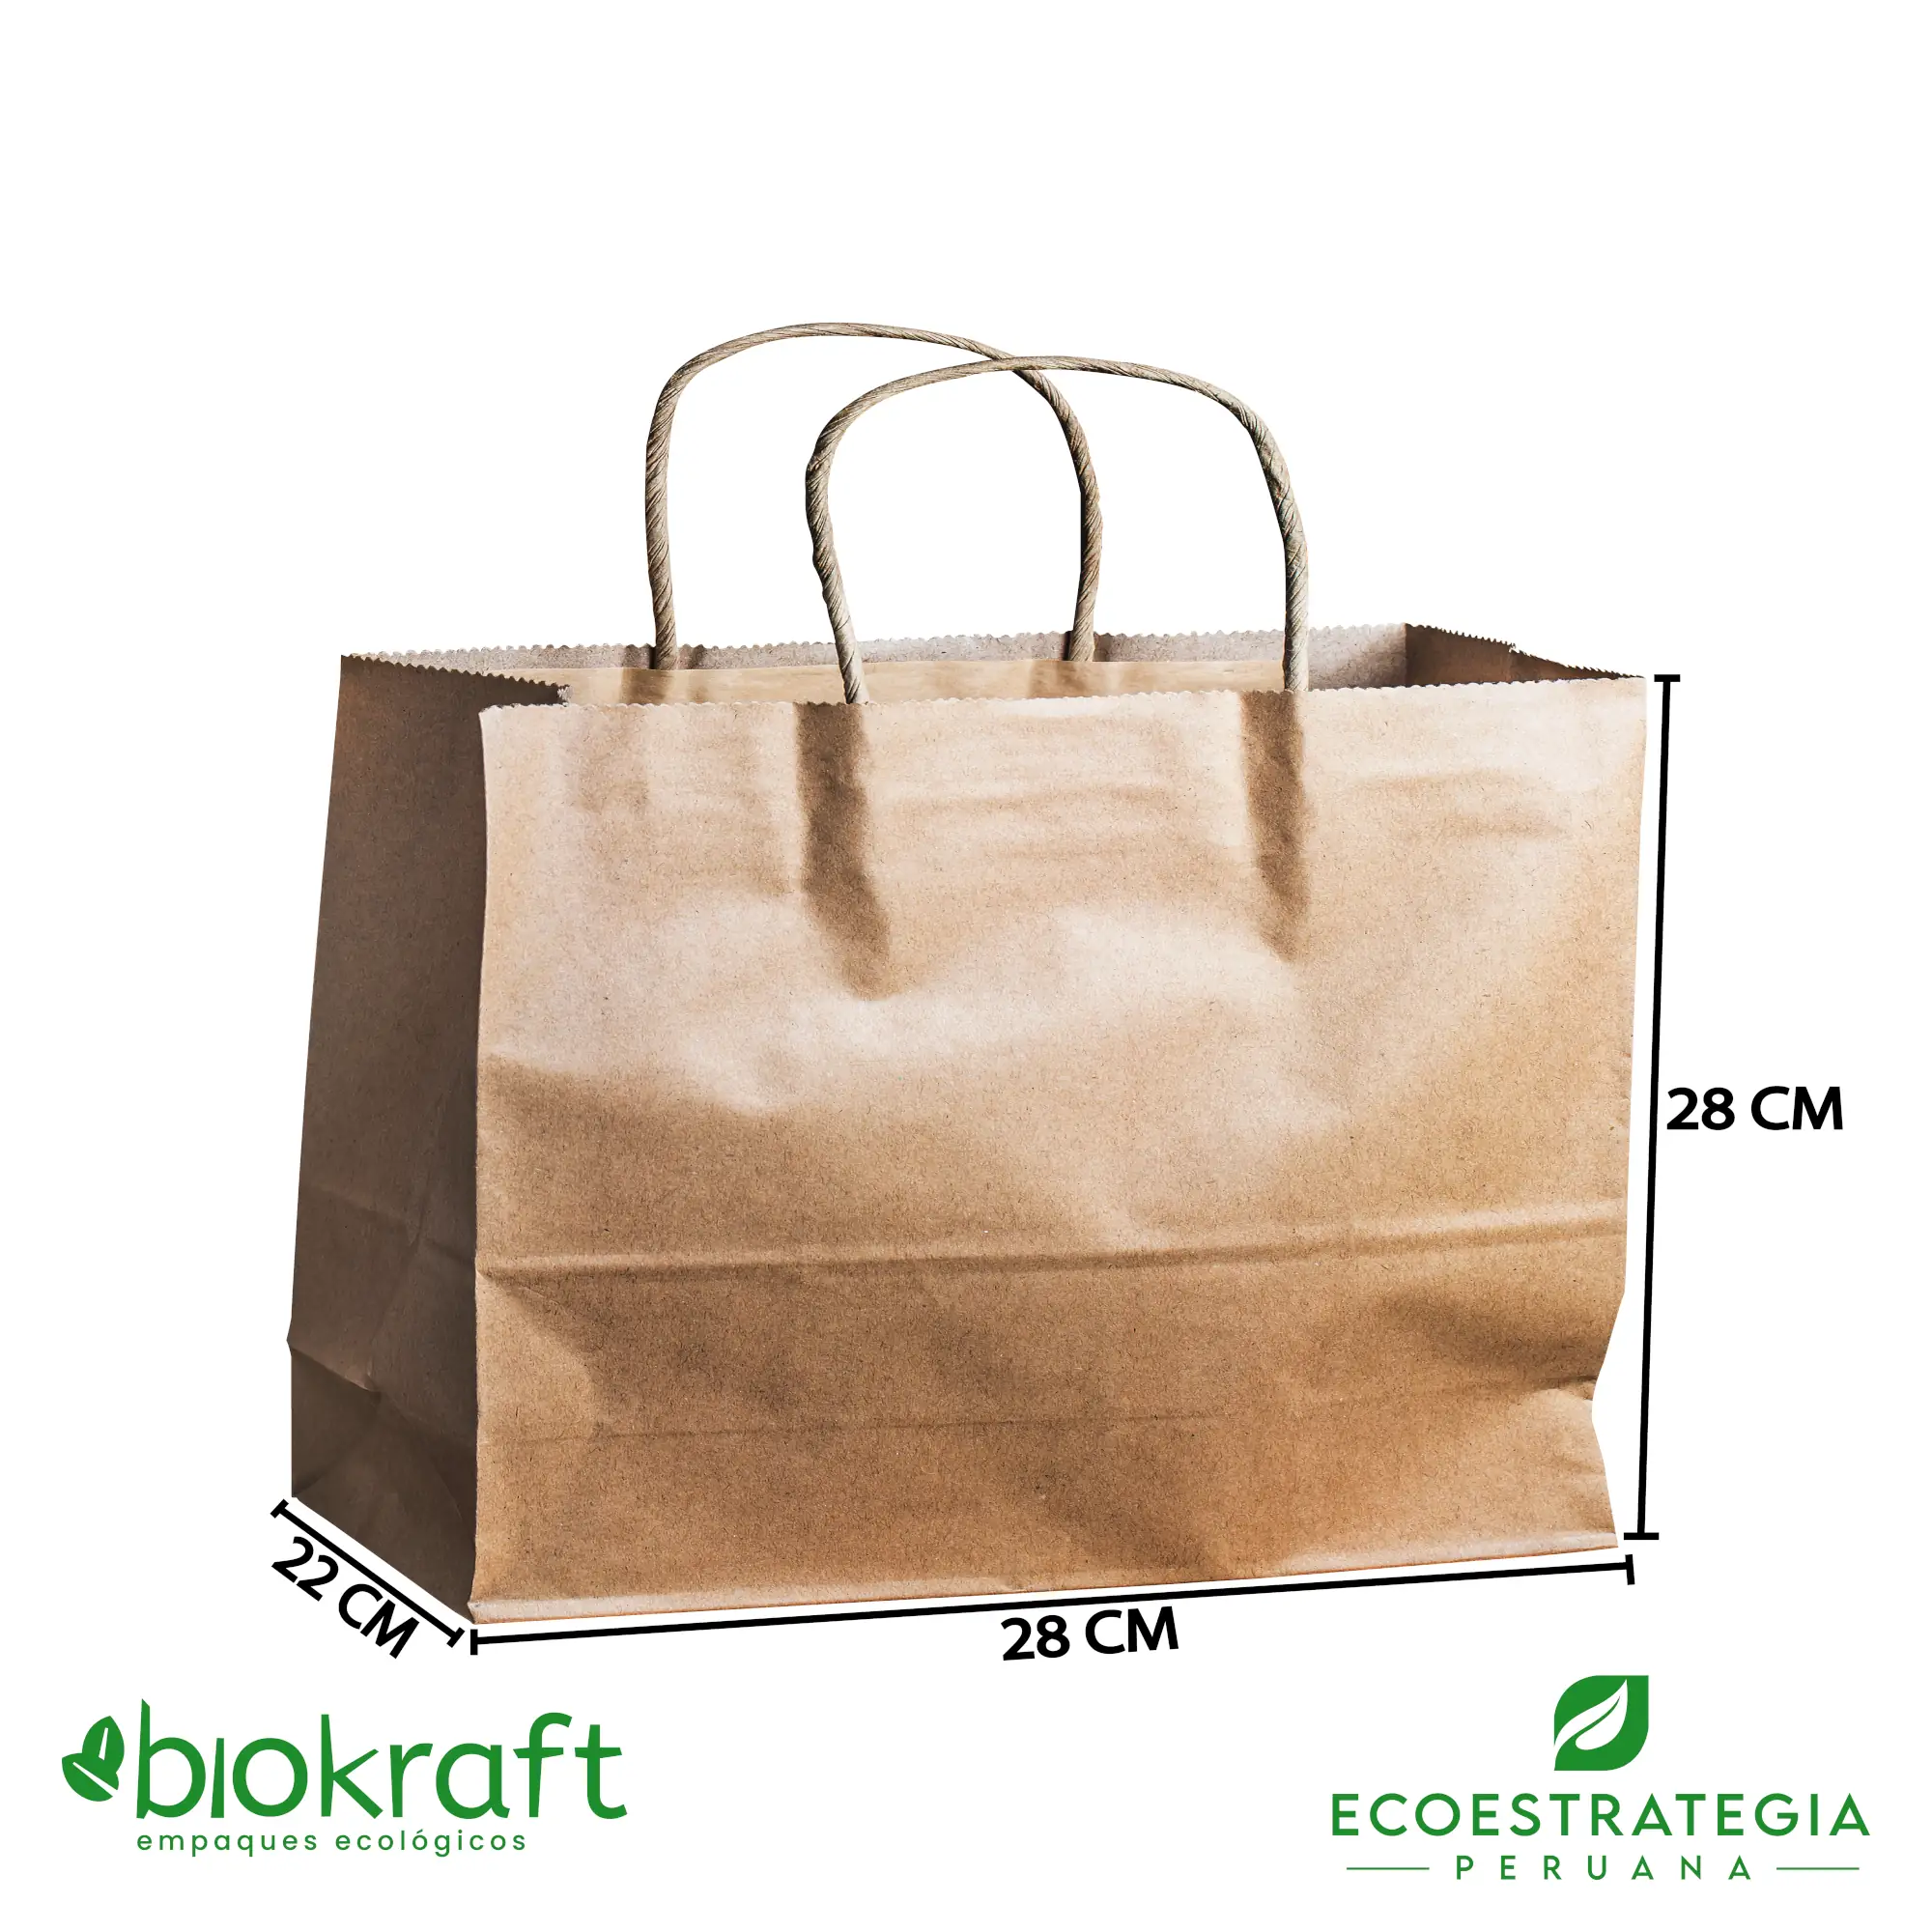 Esta bolsa de papel Kraft tiene un grosor de 125 gr. Bolsa biodegradable de excelente gramaje y medida, ideal para comidas y productos ligeros. Cotiza ahora tus bolsas Kraft con asa número 22